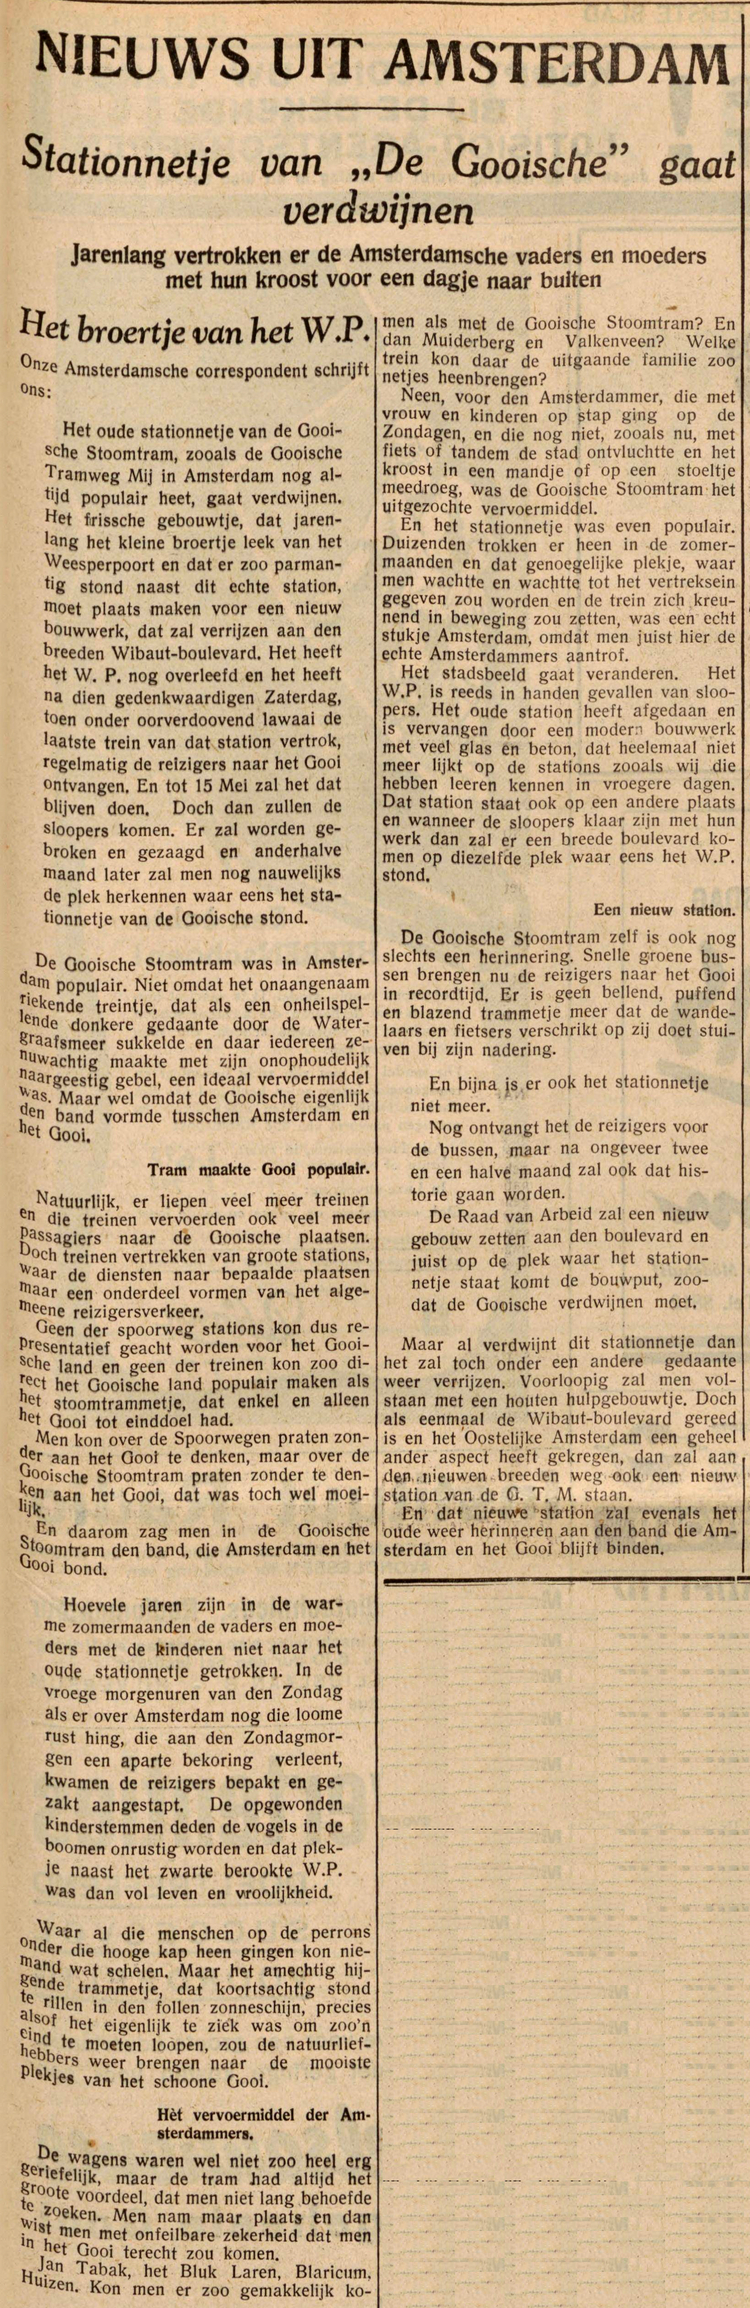 26 februari 1940 - Stationnetje van &quot;De Gooische&quot; gaat verdwijnen  